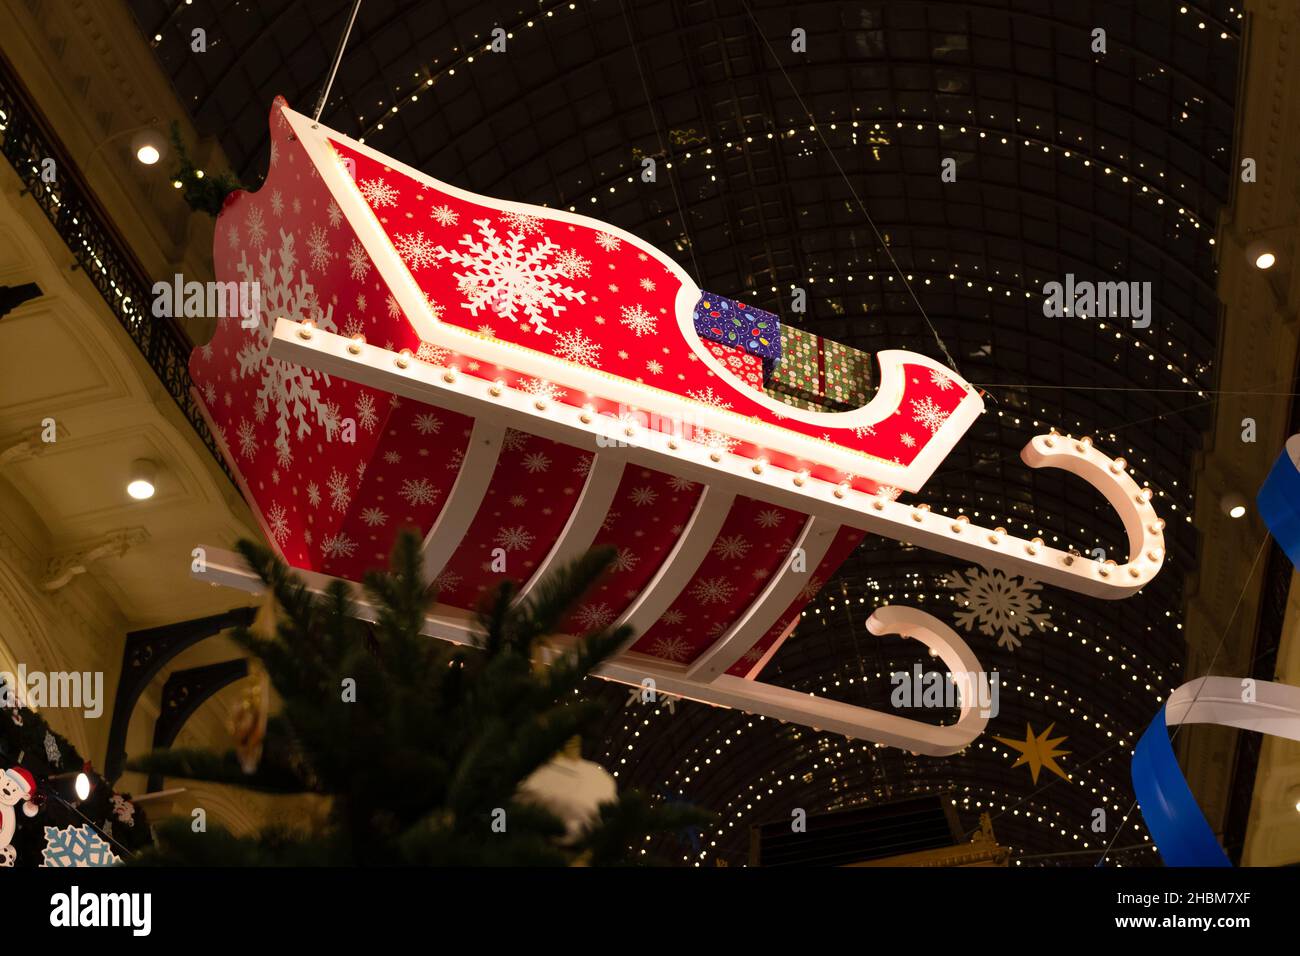 Roter, heller weihnachtsmann-Schlitten mit Geschenkkartons und Schneeflocken in der Mall am Silvesterabend. Nahaufnahme Stockfoto